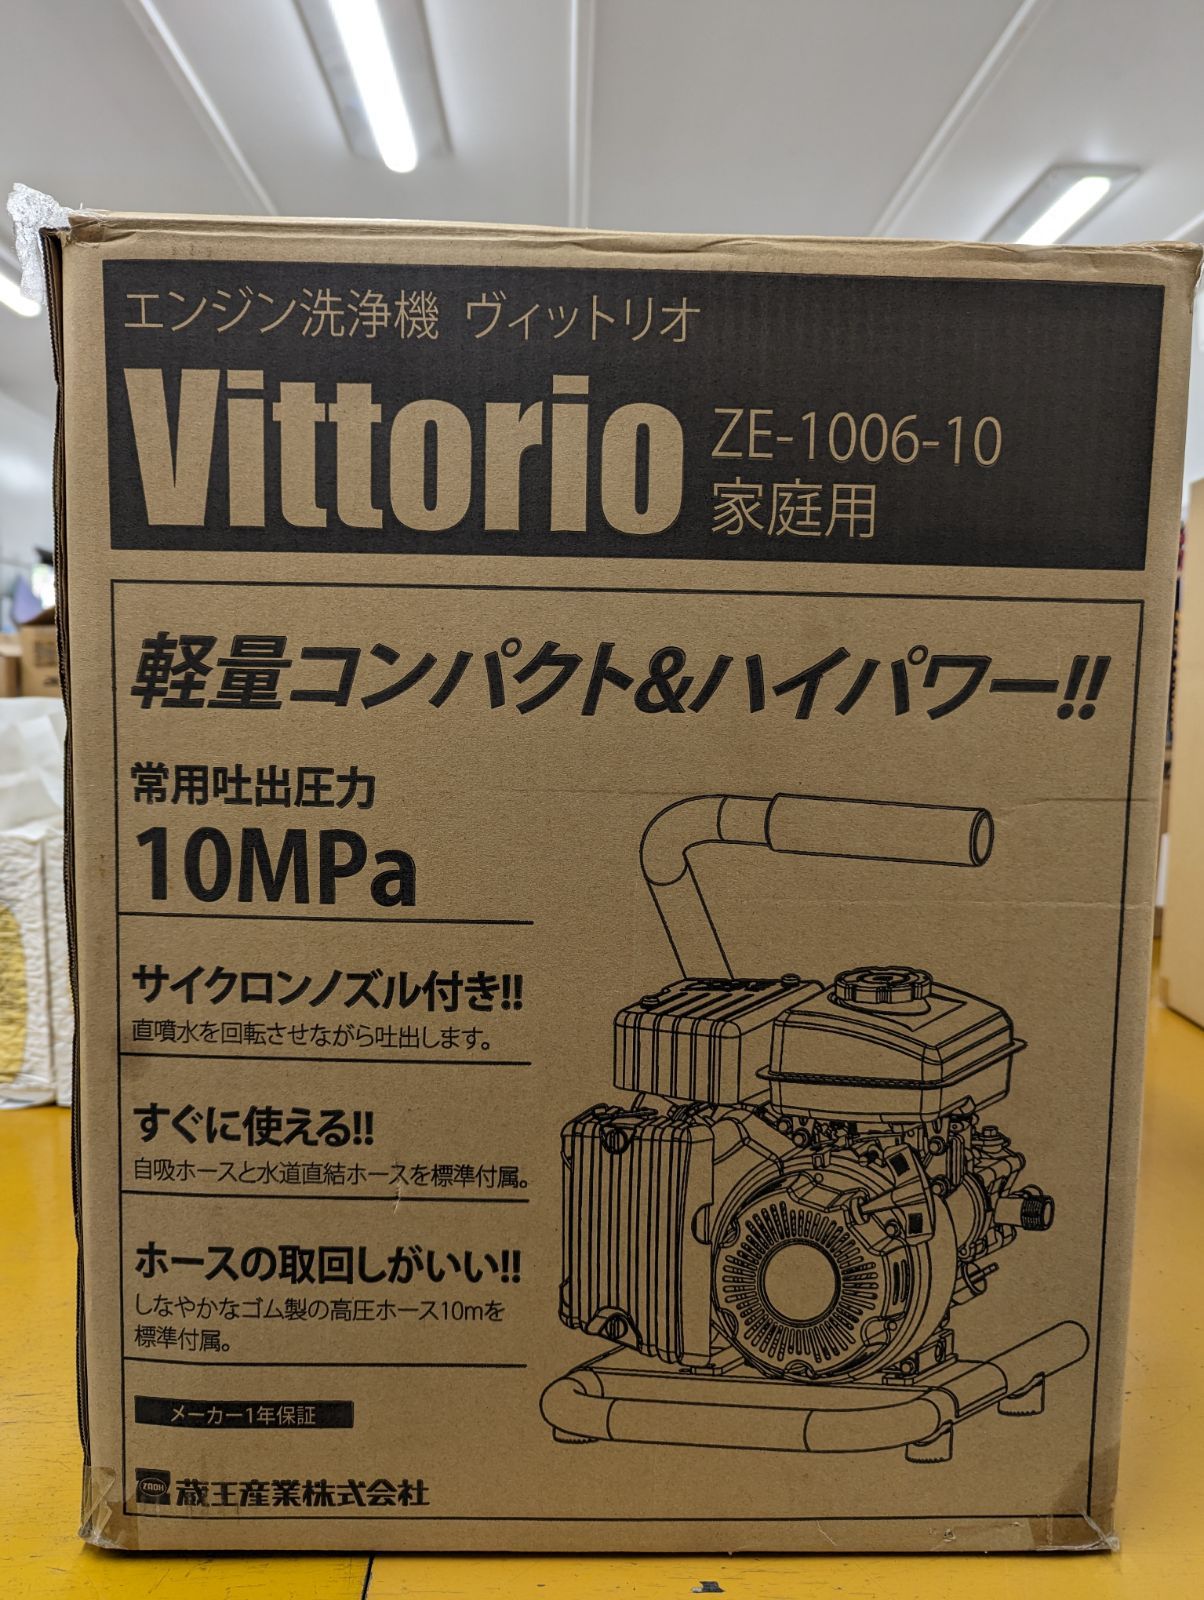 蔵王産業 ZAOH エンジン洗浄機 ヴィットリオ Vittorio 10m高圧ゴムホース標準付属 ZE-1006-10 Toy Mart  Store メルカリ